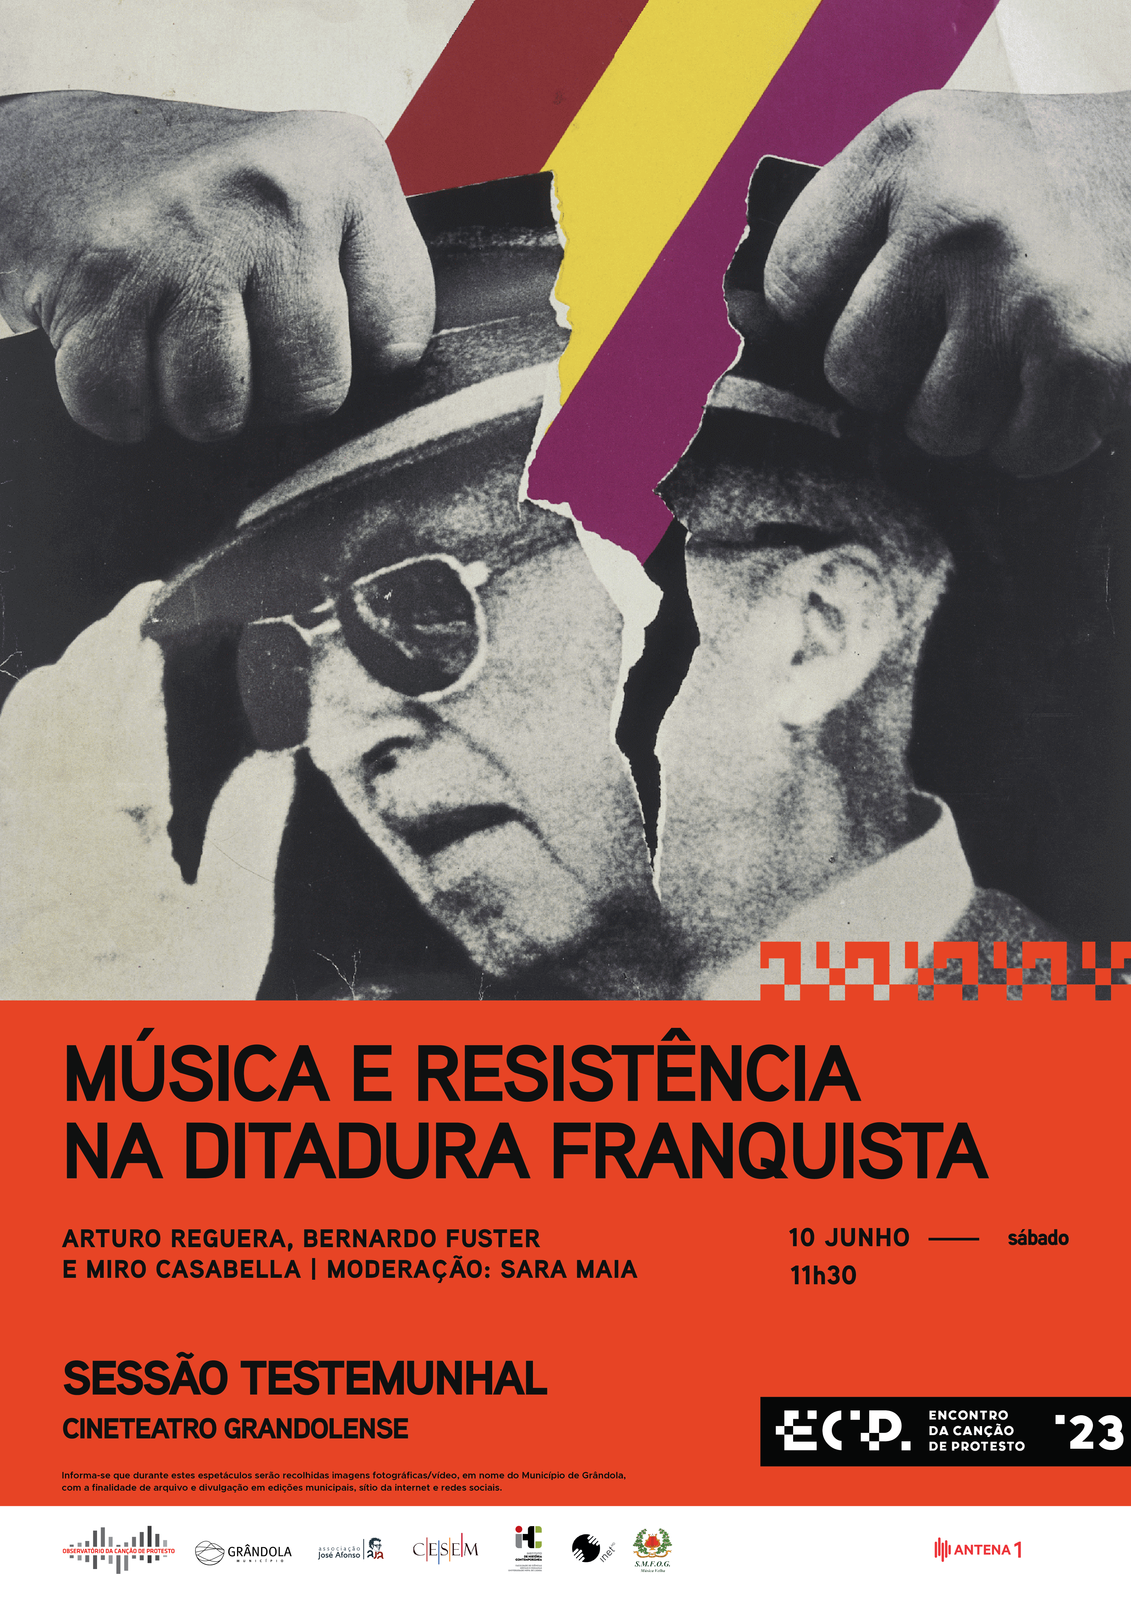 Encontro da Canção de Protesto | Sessão Testemunhal «Música e Resistência na Ditadura Franquista»